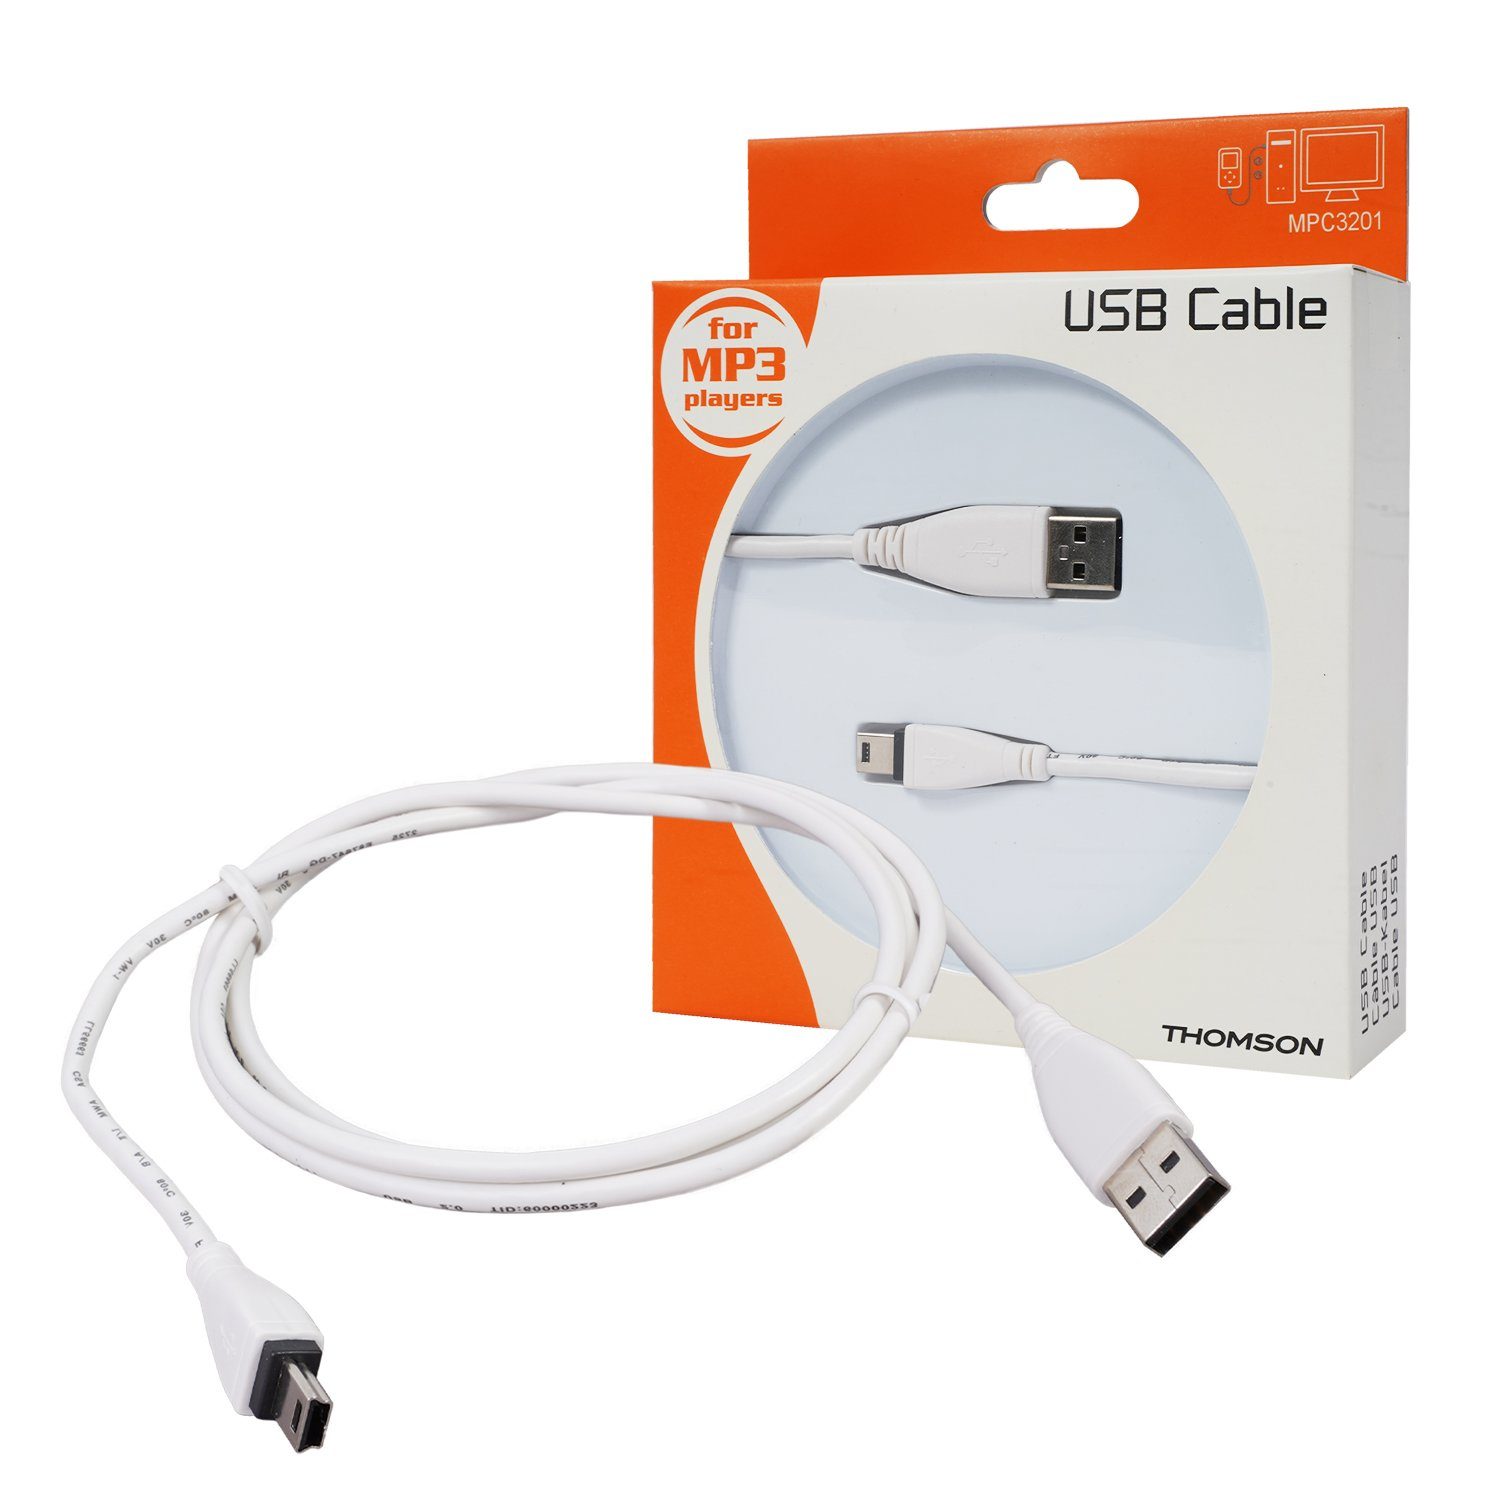 Thomson Navigationstasche Mini-USB B-Stecker USB-Kabel 1,2m Weiß, USB 2.0  Anschluss-Kabel mit Mini-B-Stecker, für PC, Tablet, Handy etc.